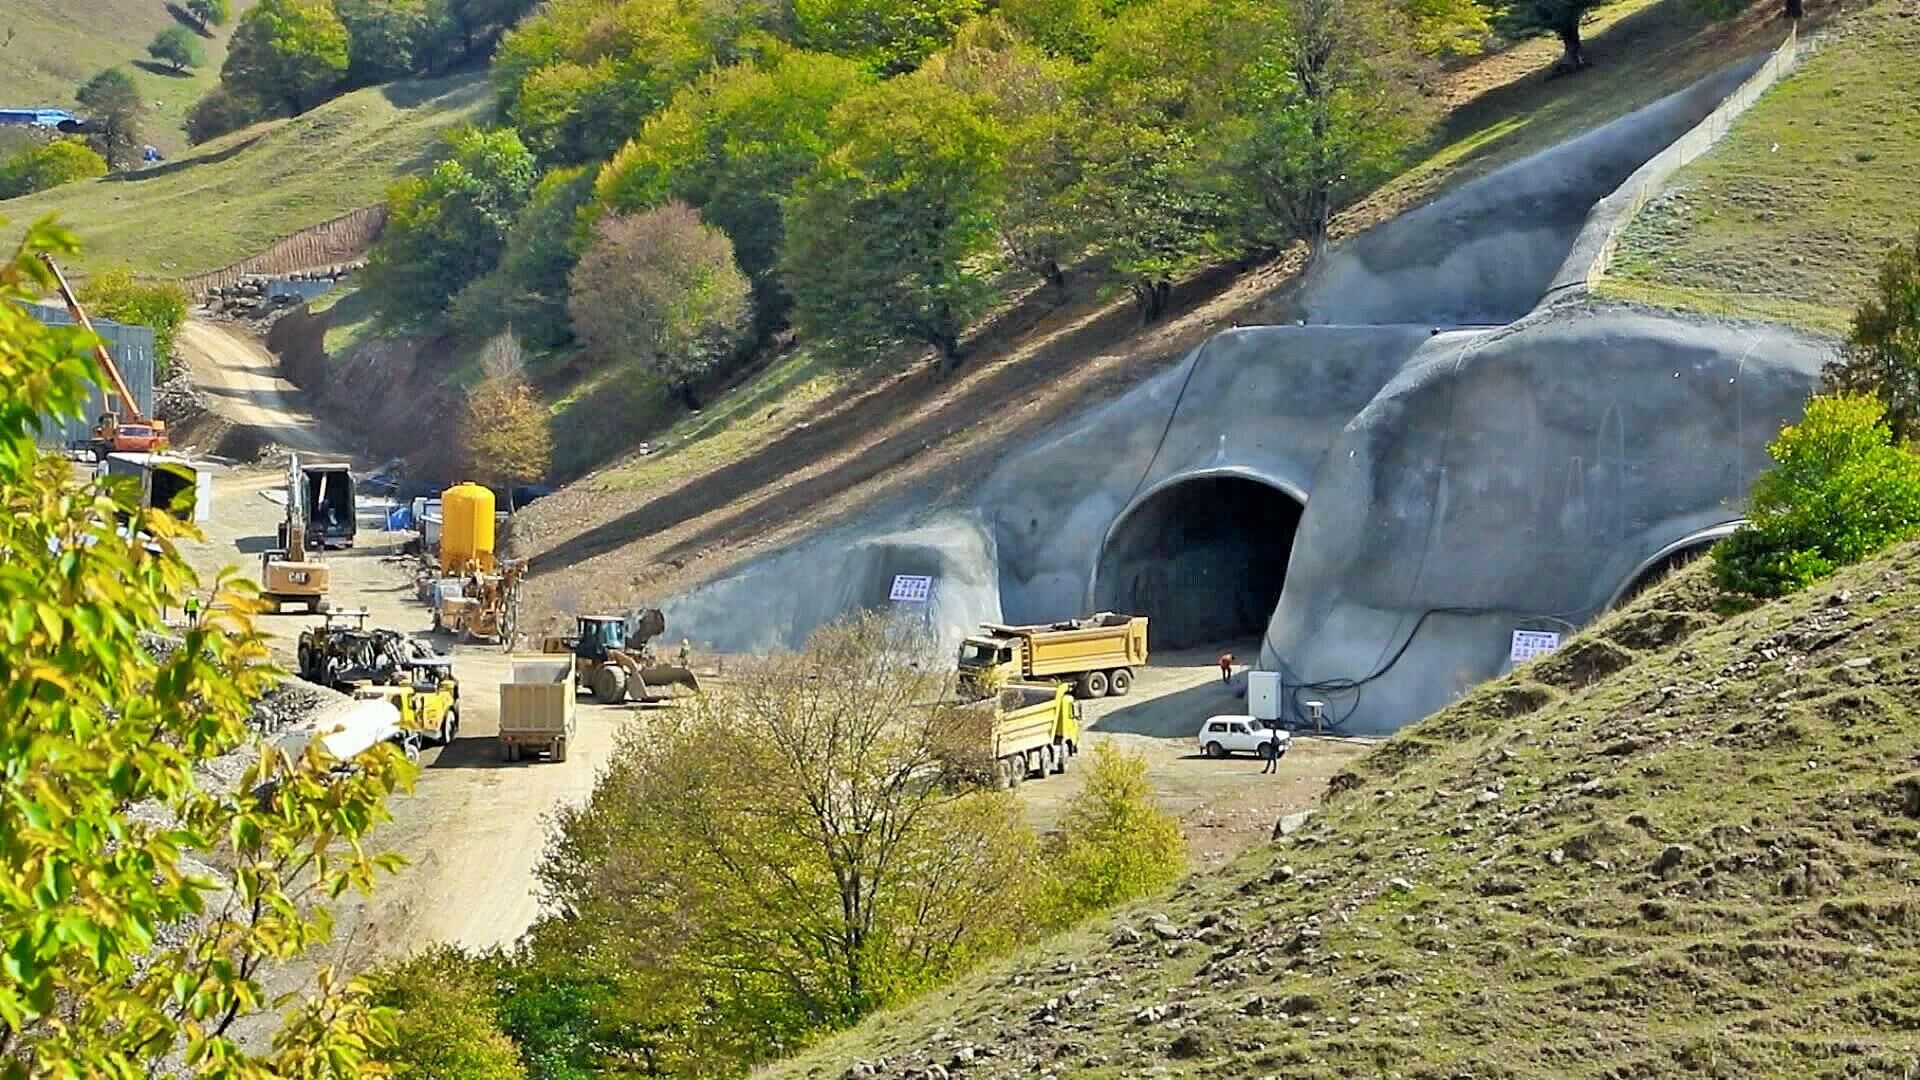 Toğanalı-Kəlbəcər avtomobil yolunda Murovdağ tunelinin inşası - Sputnik Azərbaycan, 1920, 01.07.2022